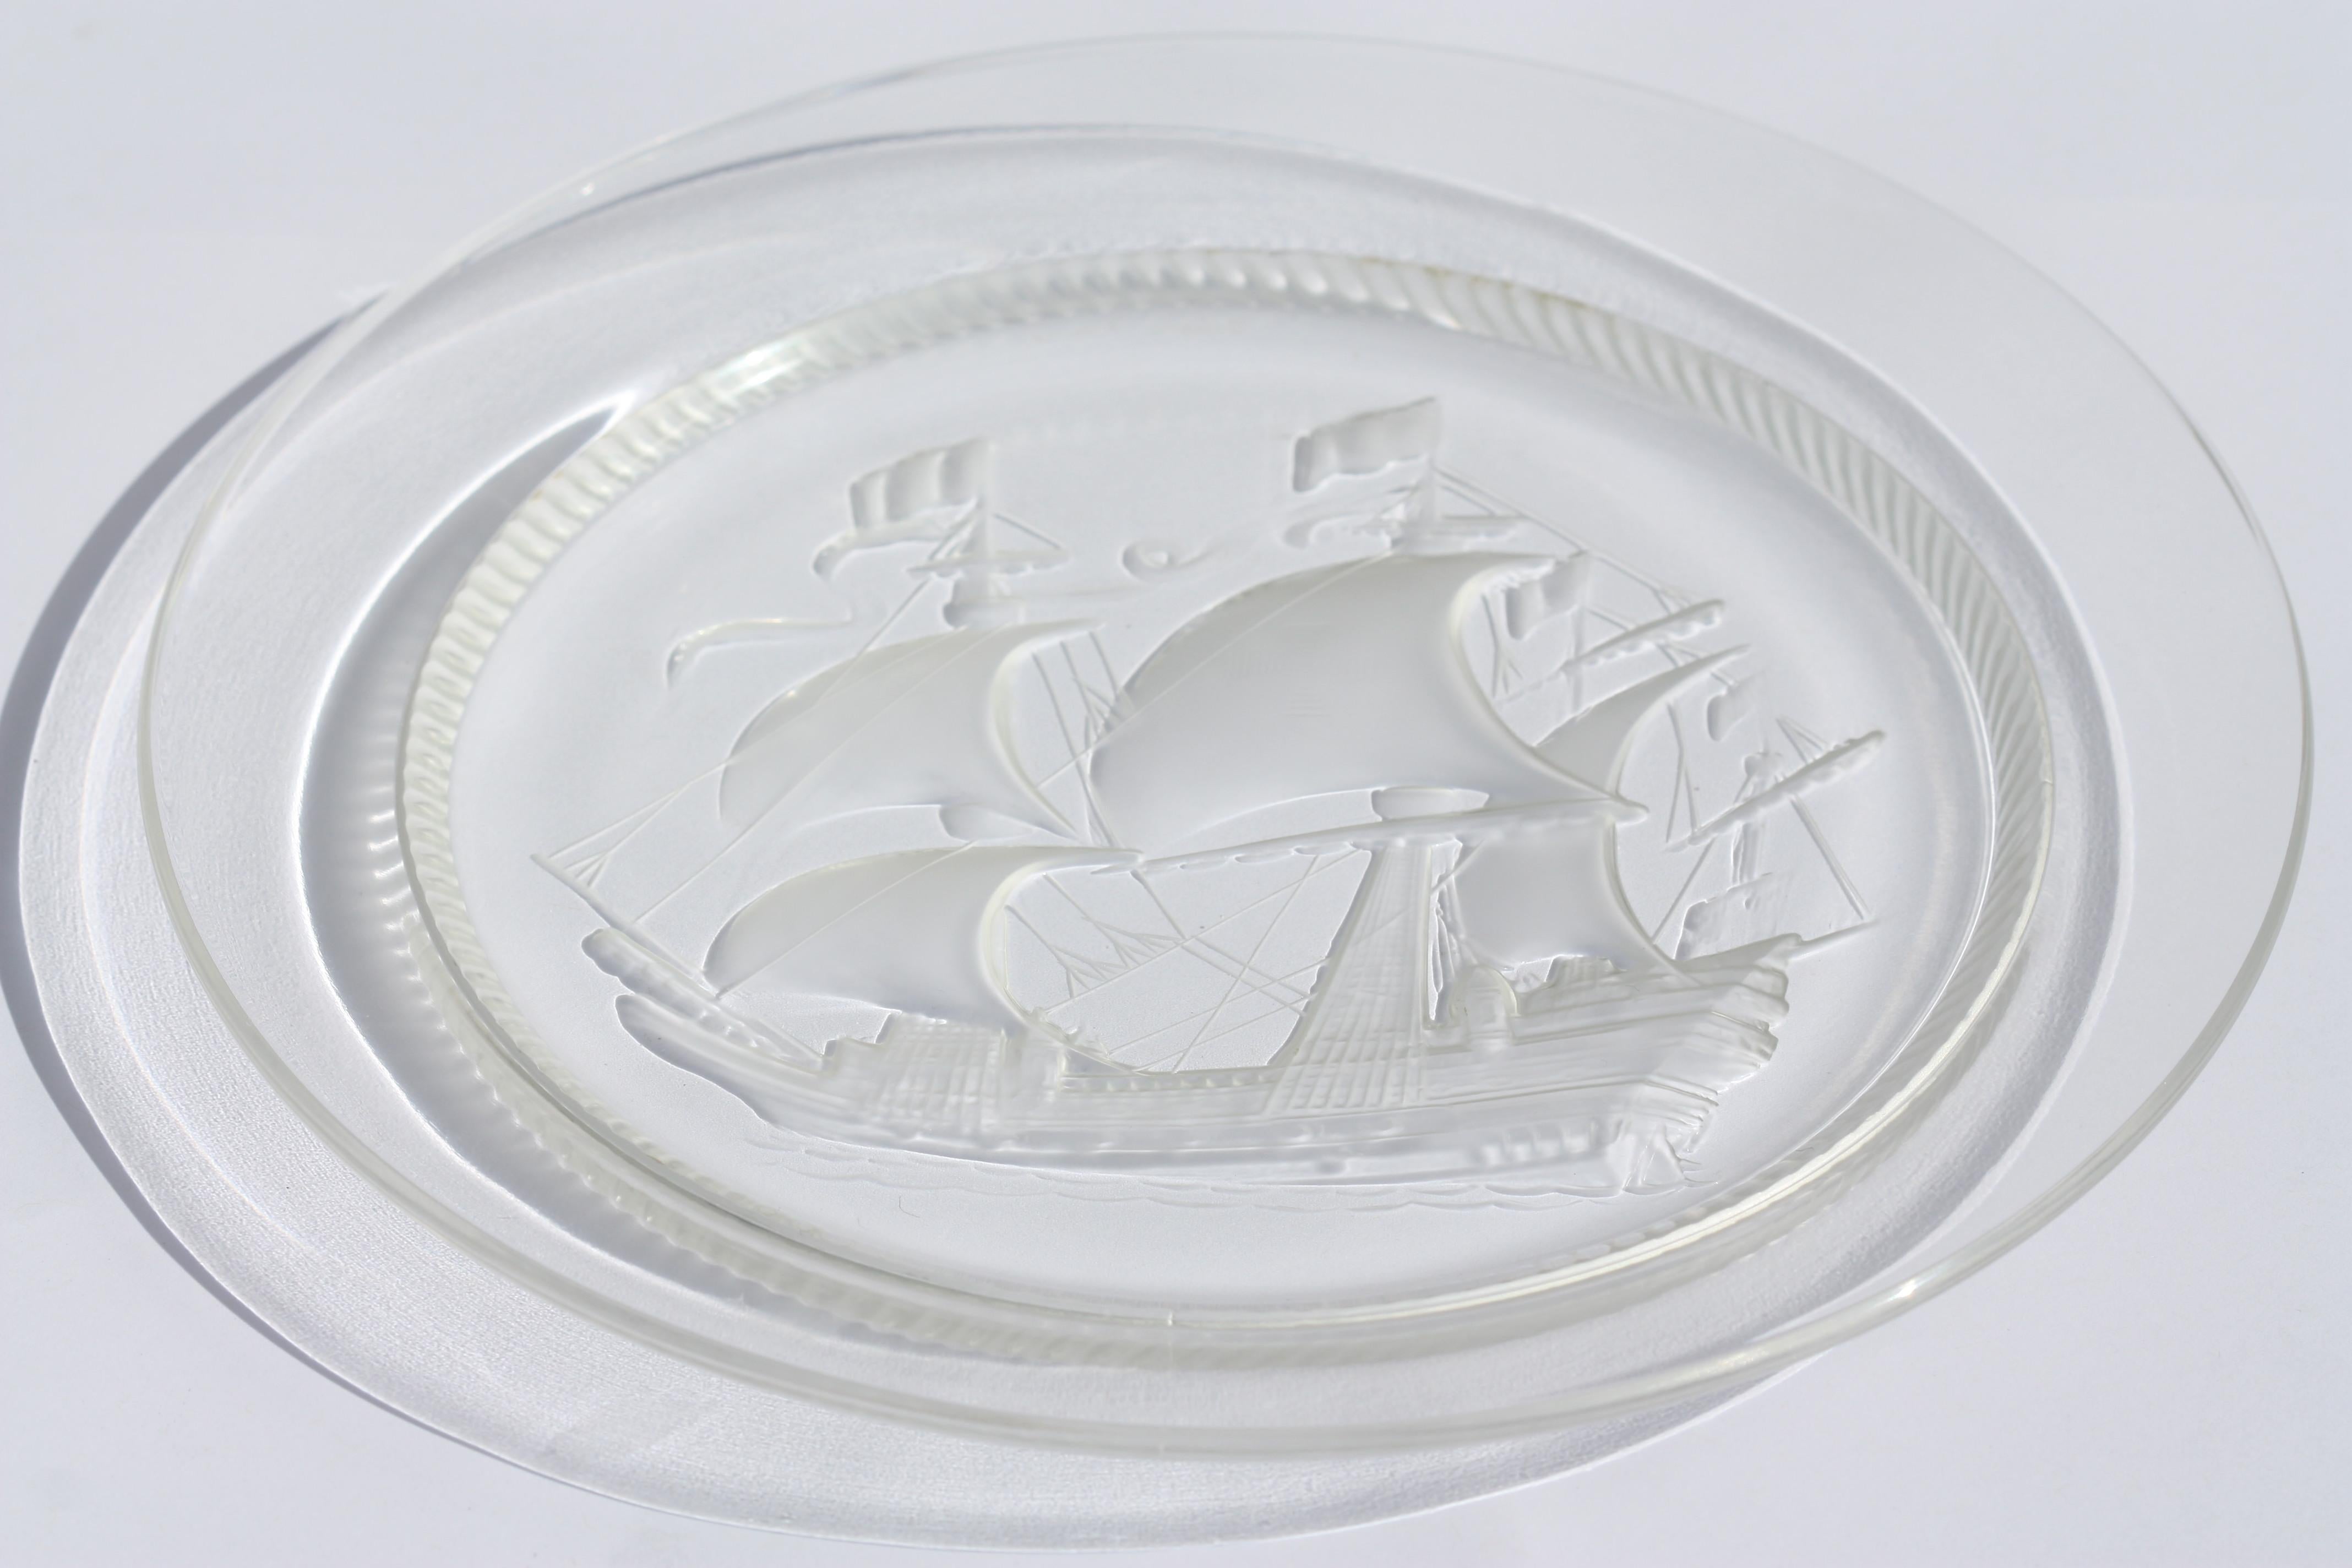 
Assiette en verre Ship en cristal Lalique, moderne
avec un navire en haute mer
signé
Lalique France
Diamètre de 21,59 cm (8,5 in.)
